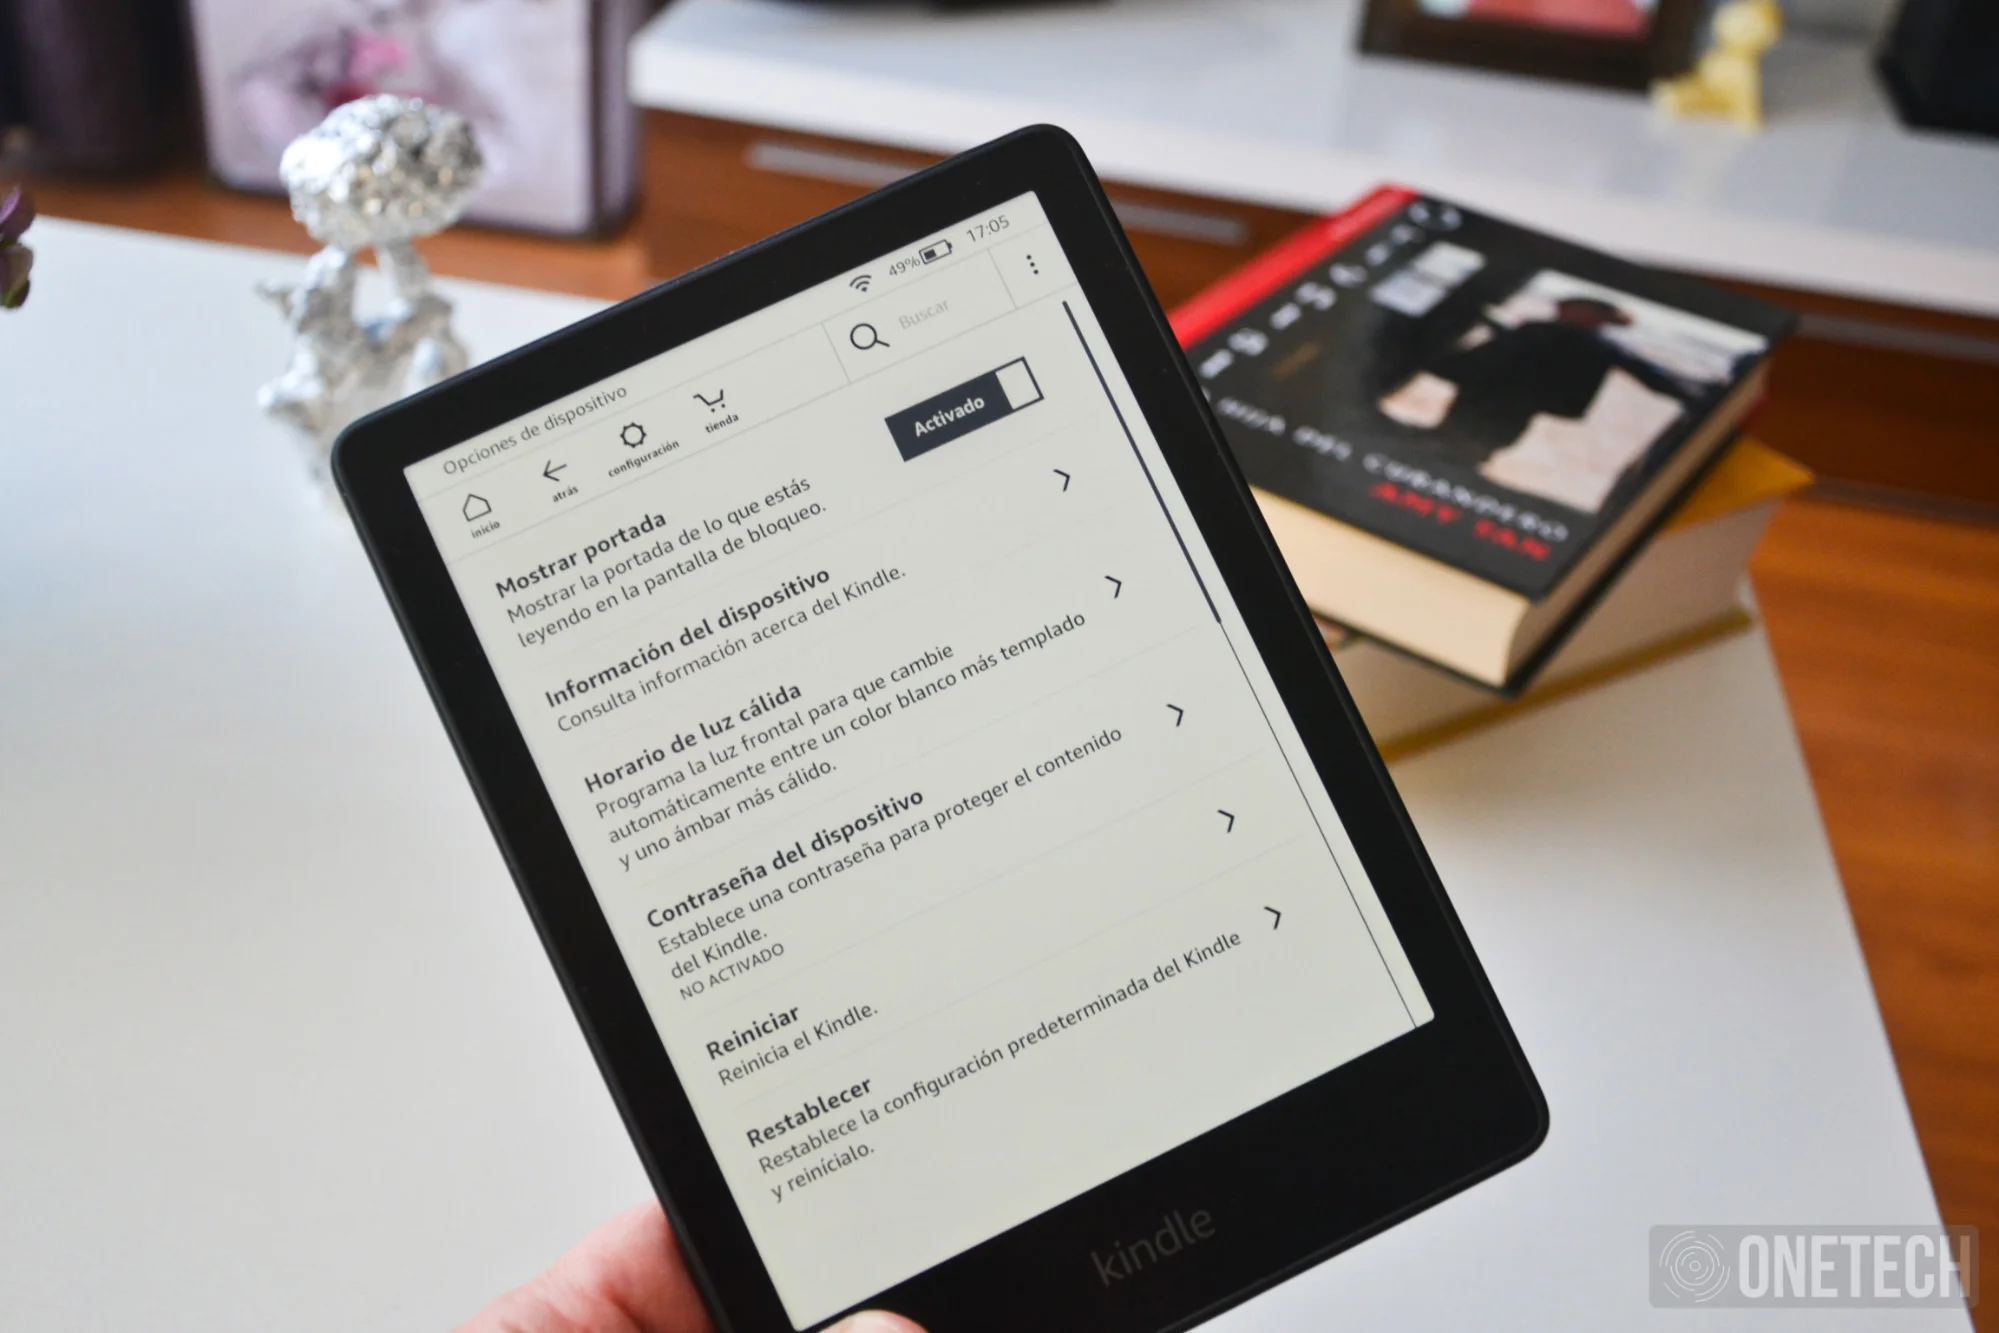 Kindle Paperwhite 2021, análisis: review con opinión y  características